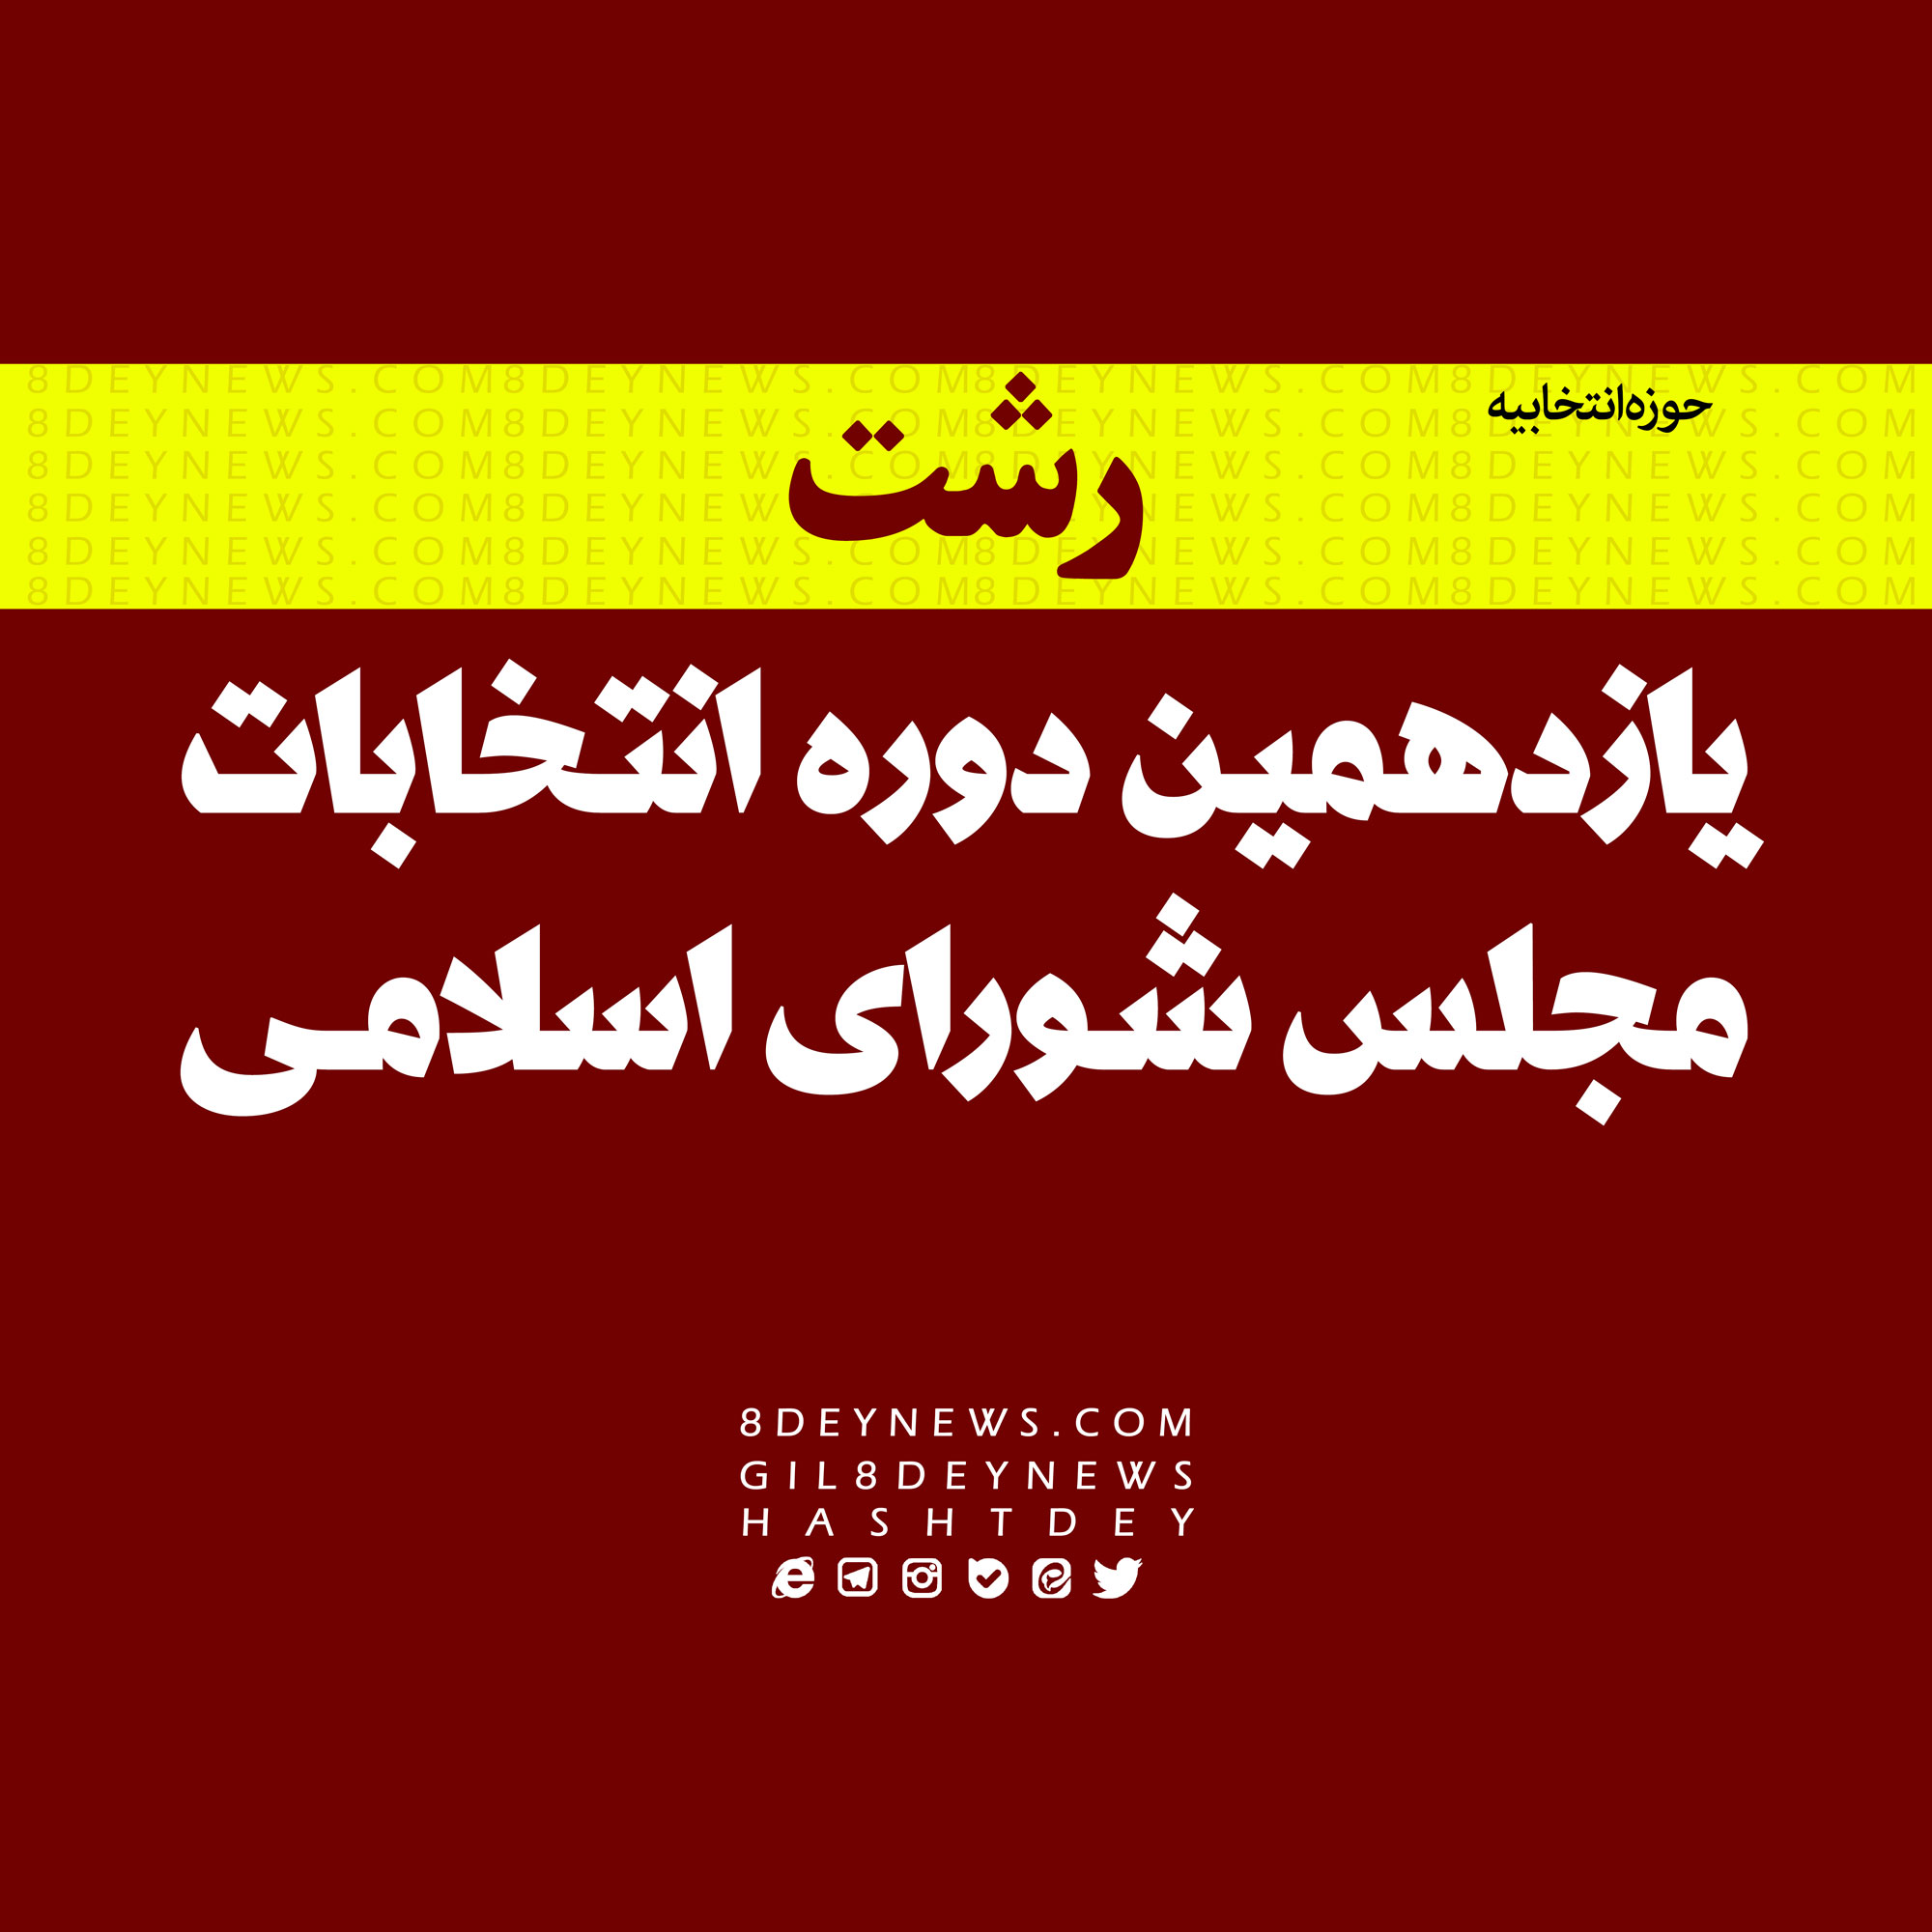 اعلام ۶نامزد مورد وثوق مجمع یاران انقلاب اسلامی در رشت + اسامی